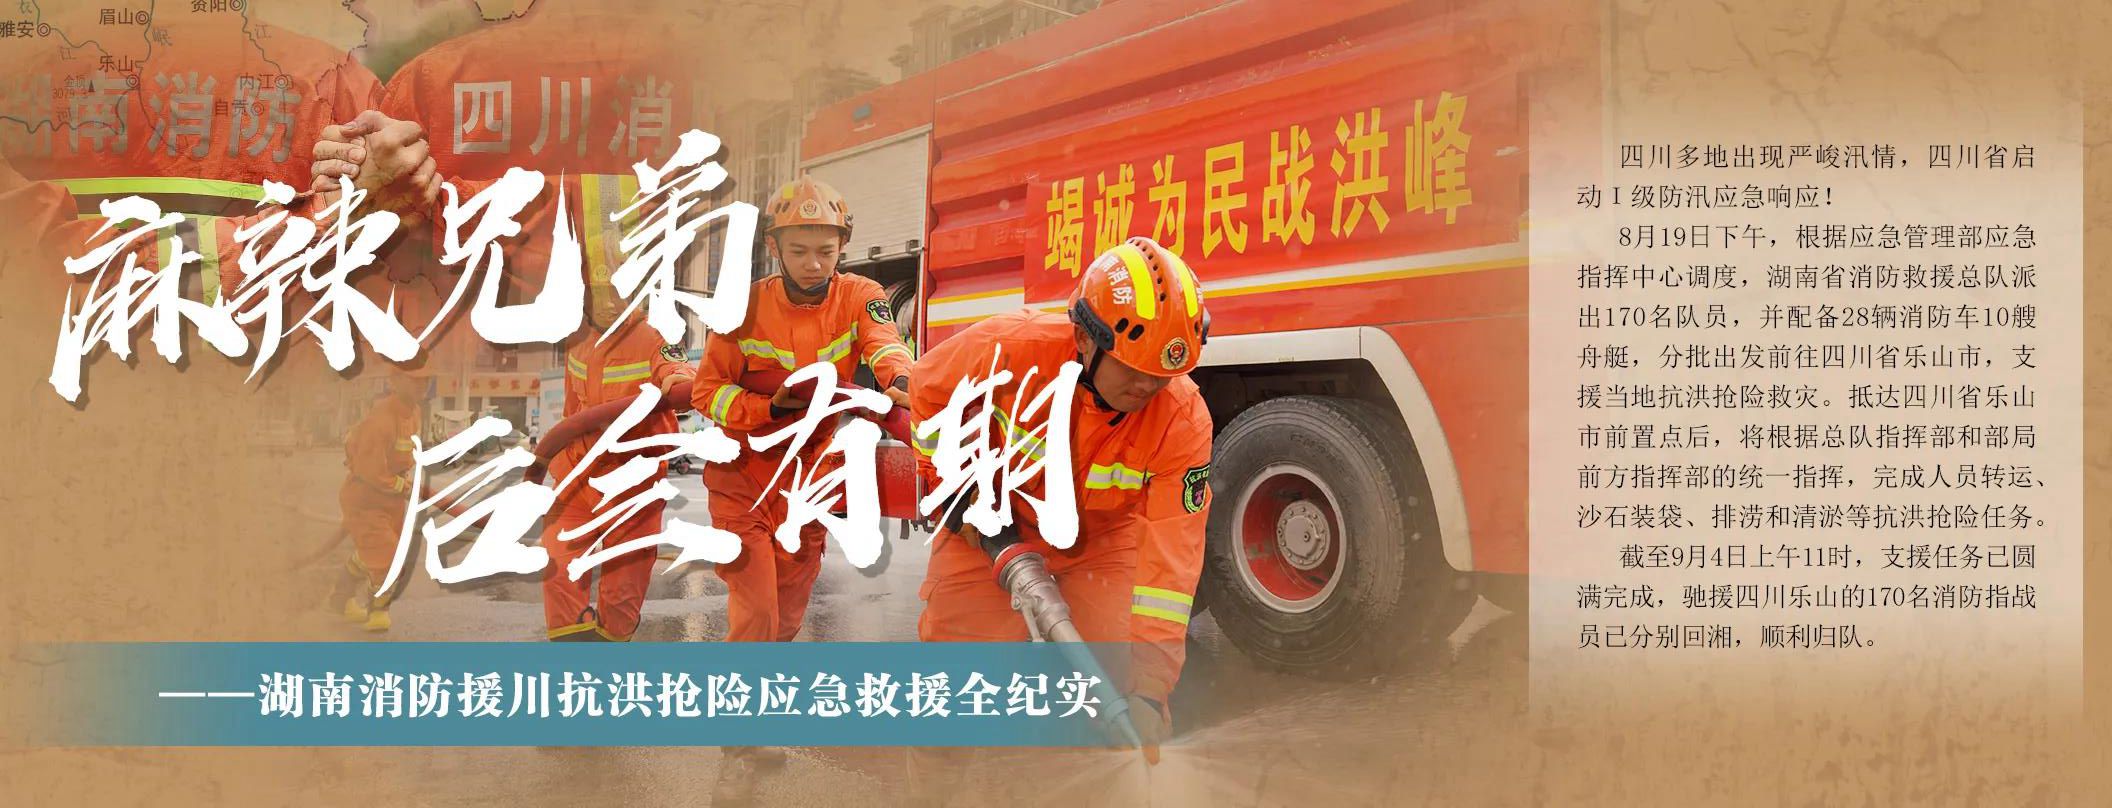 湖南消防援川抗洪抢险应急救援纪实。